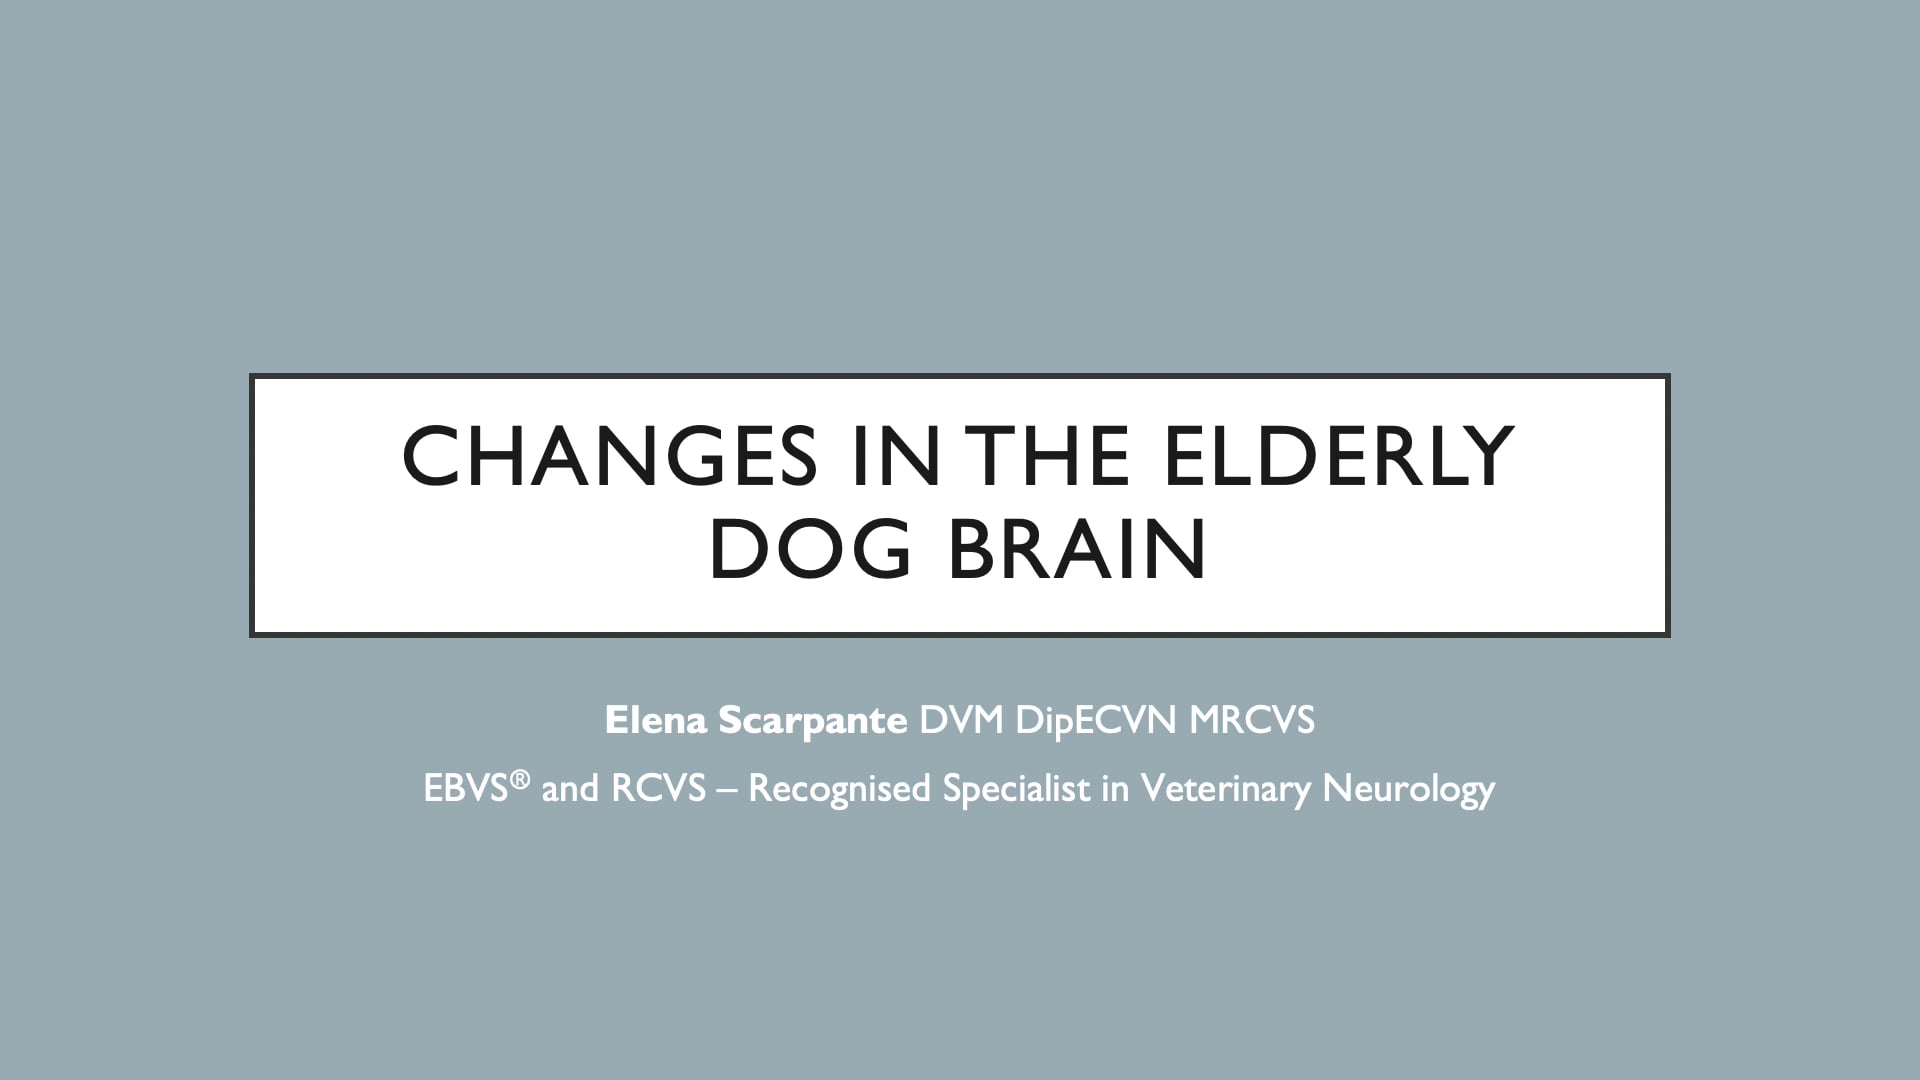 Changes in the elderly dog brain